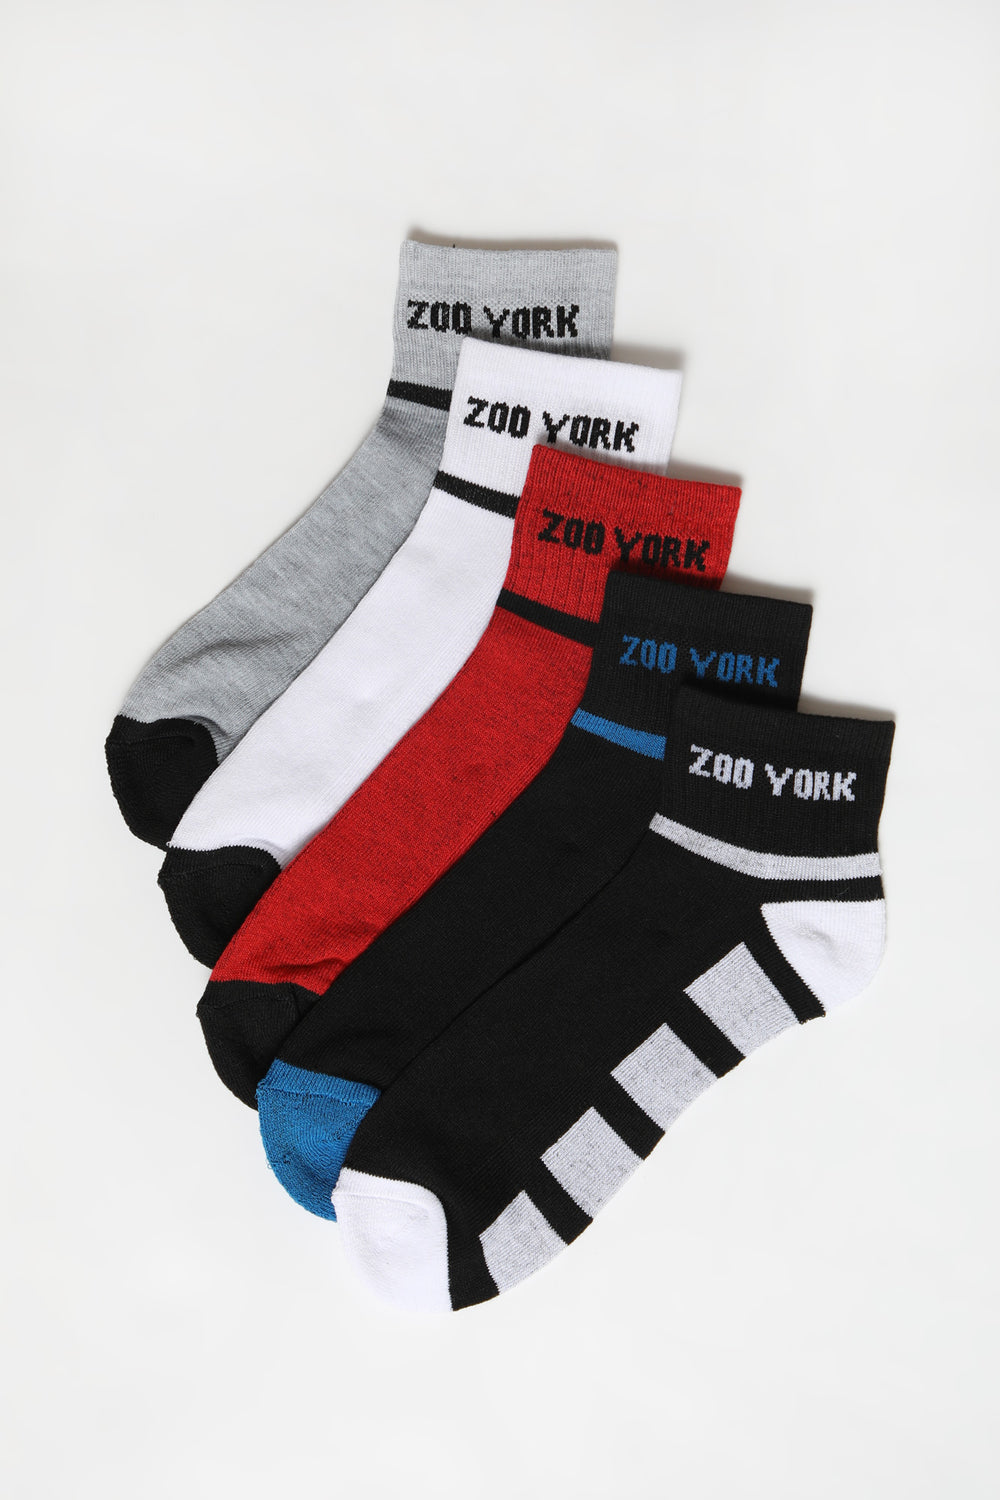 Zoo York Mens Athletic Ankle Socks 5-Pack Multi